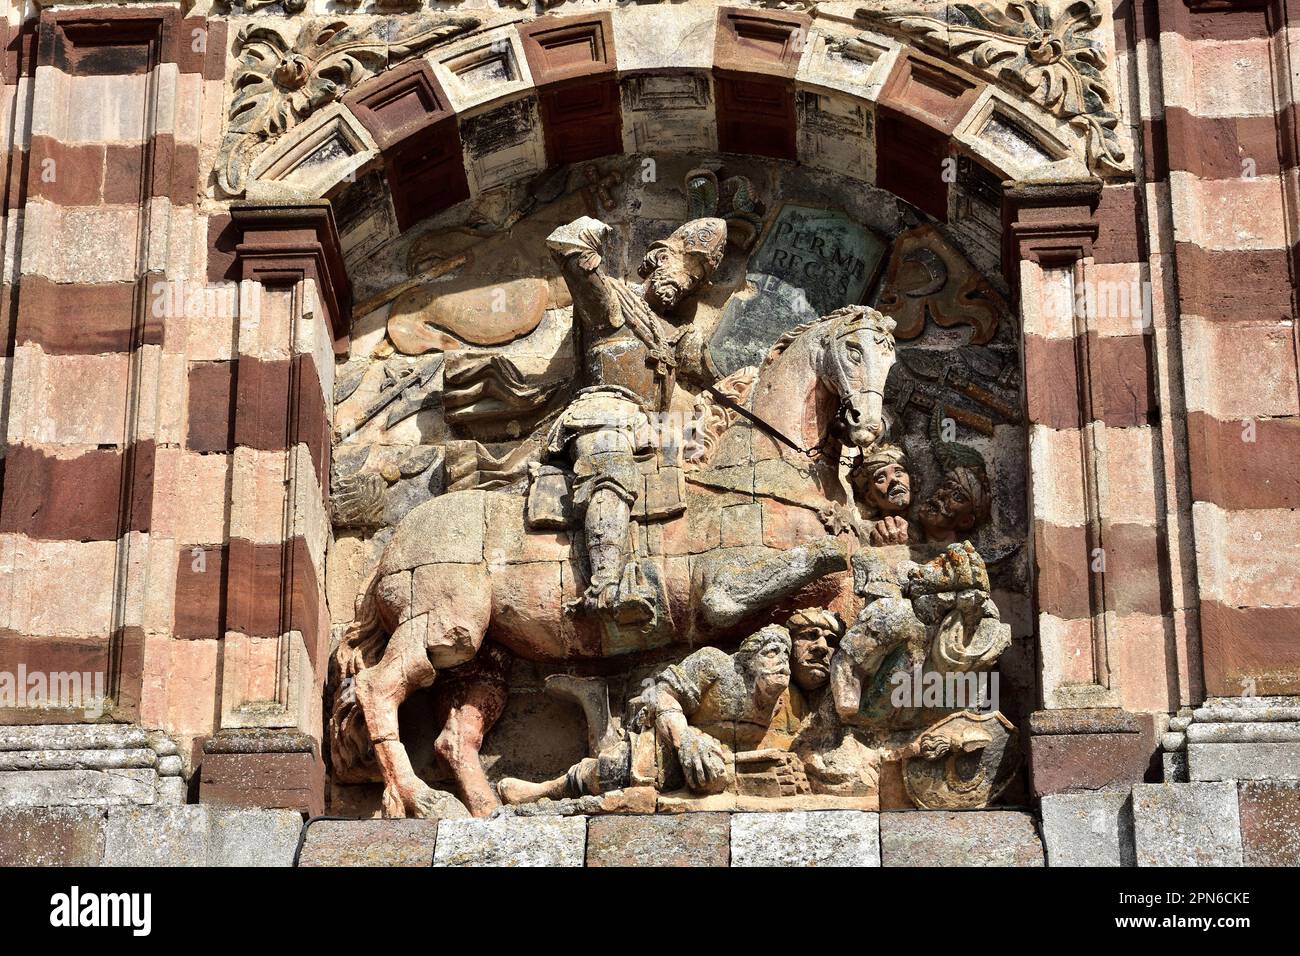 Santiago Matamoros sculpture in San Pedro de Cardeña monastery. Burgos, Spain Stock Photo